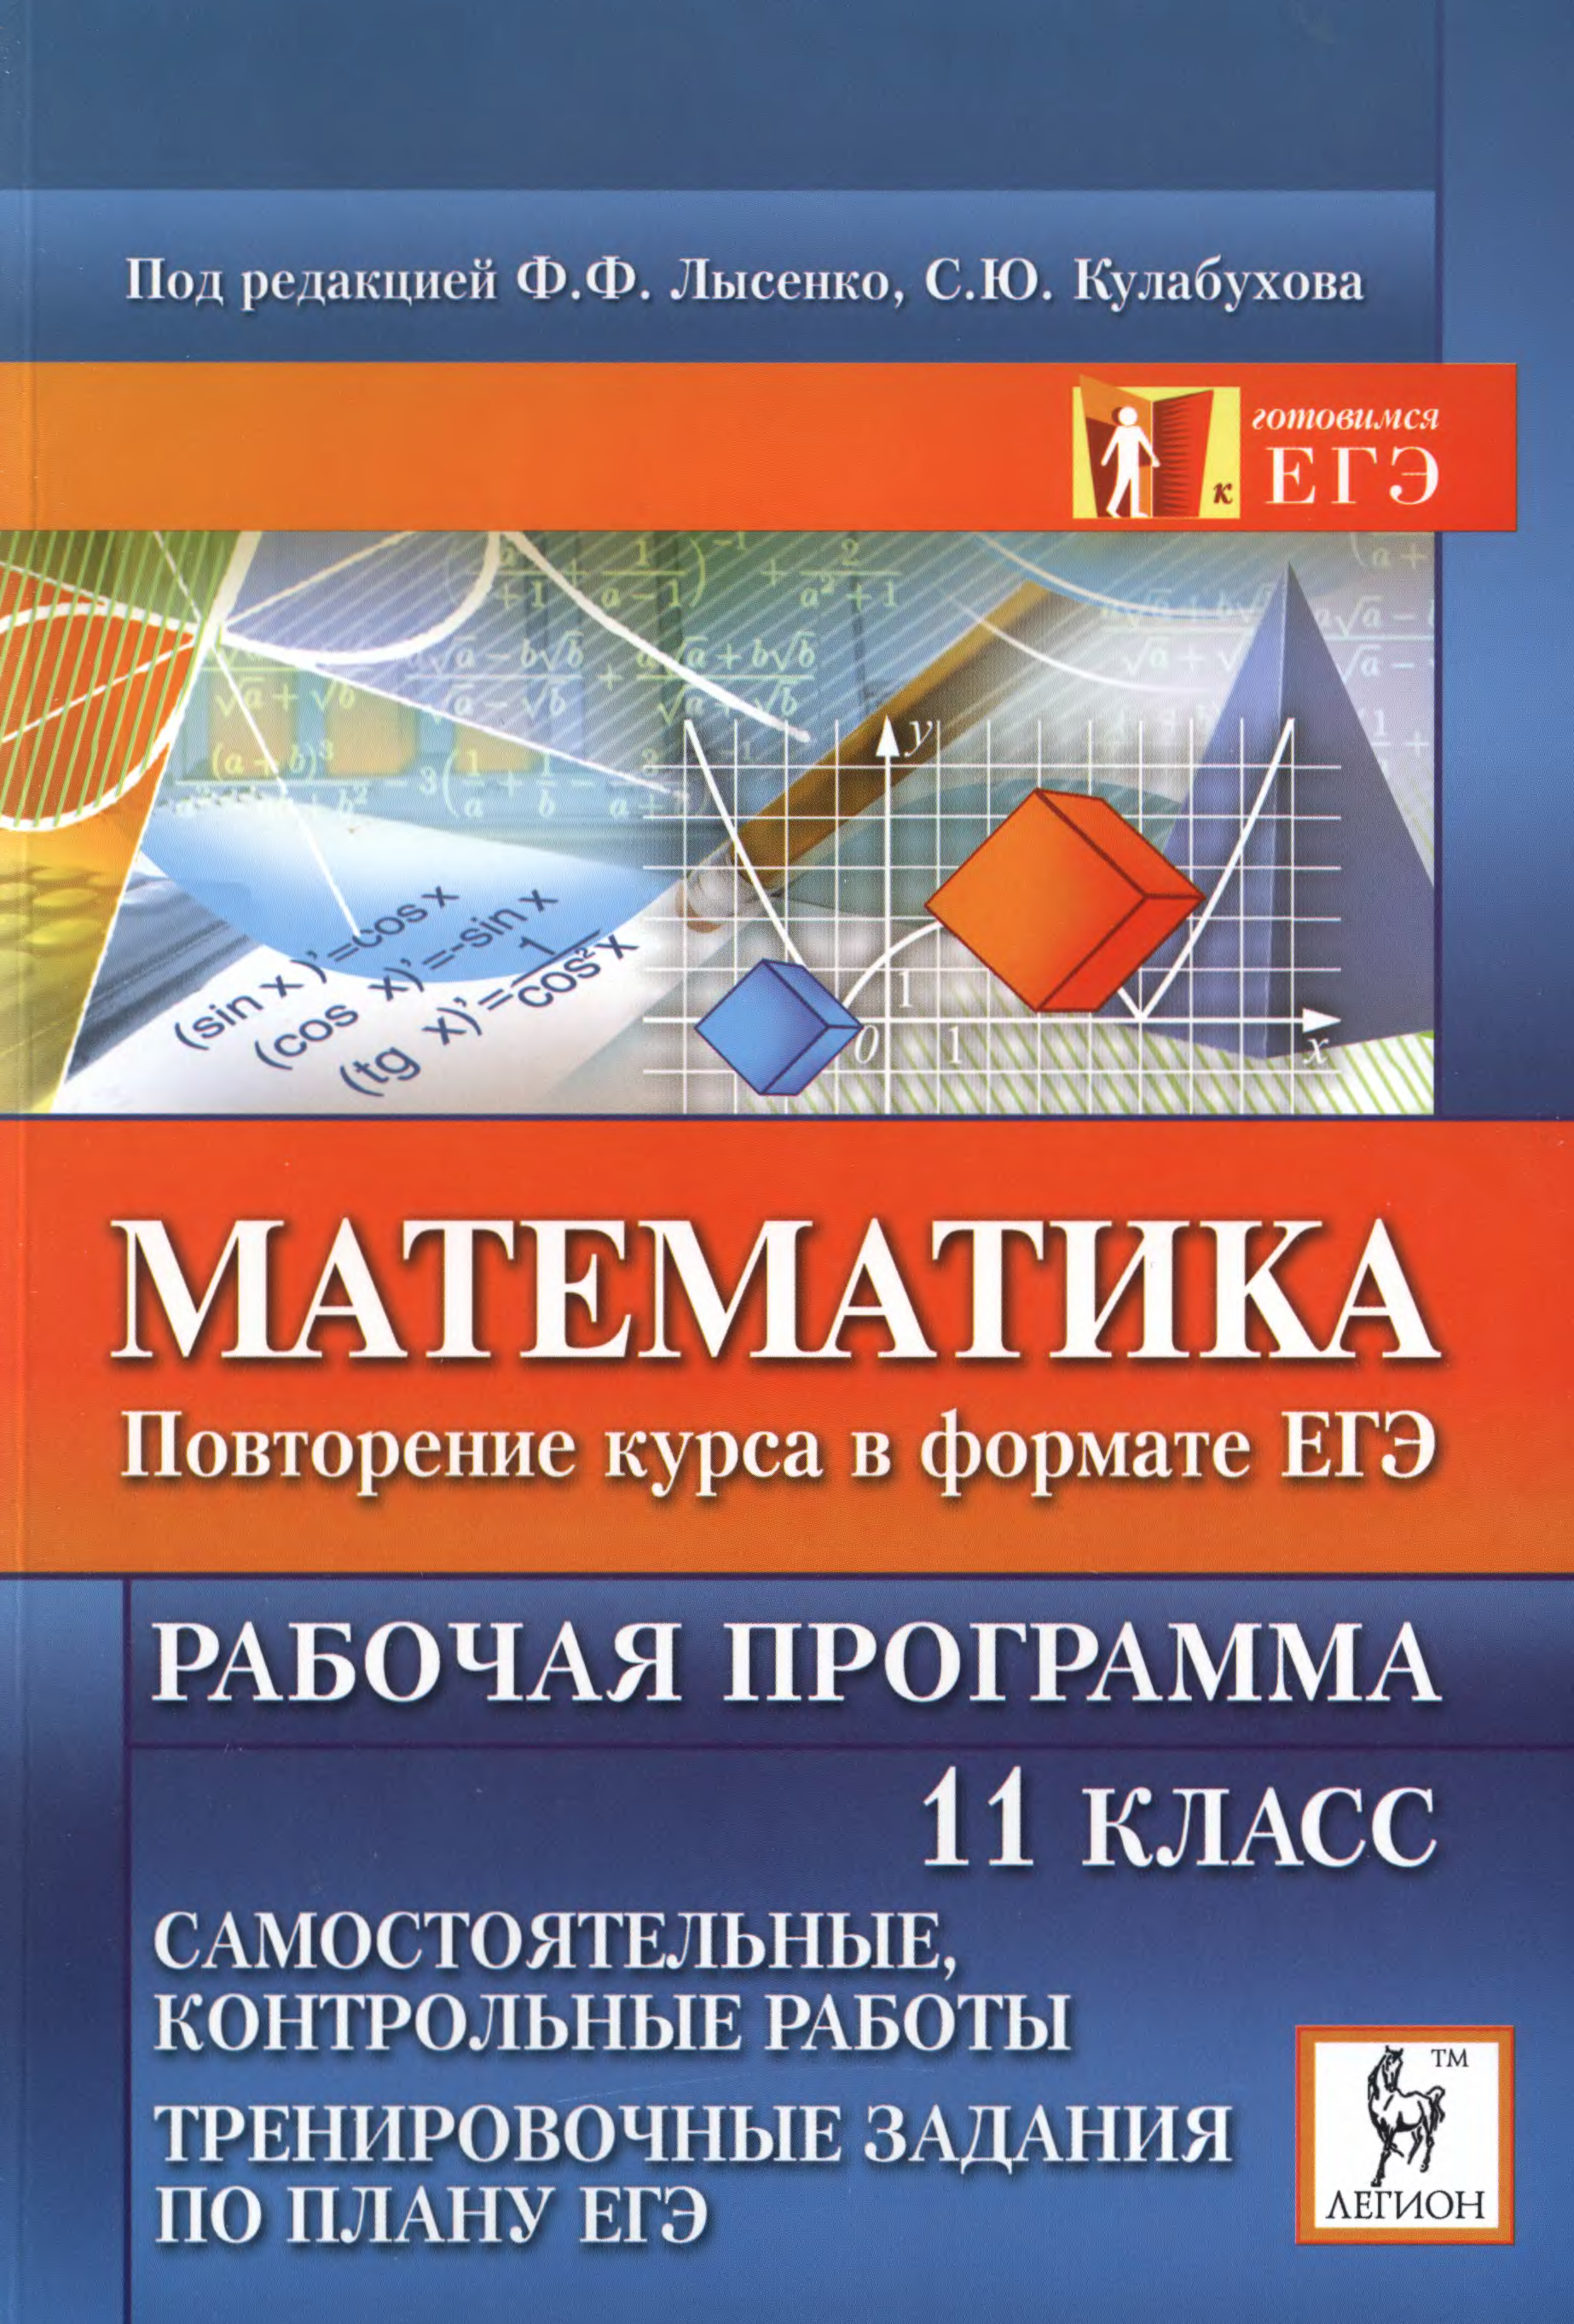 Повторение ЕГЭ математика. Программа 11 класса математика. ЕГЭ 2007 математика. Курс математика с 0 Лысенко.